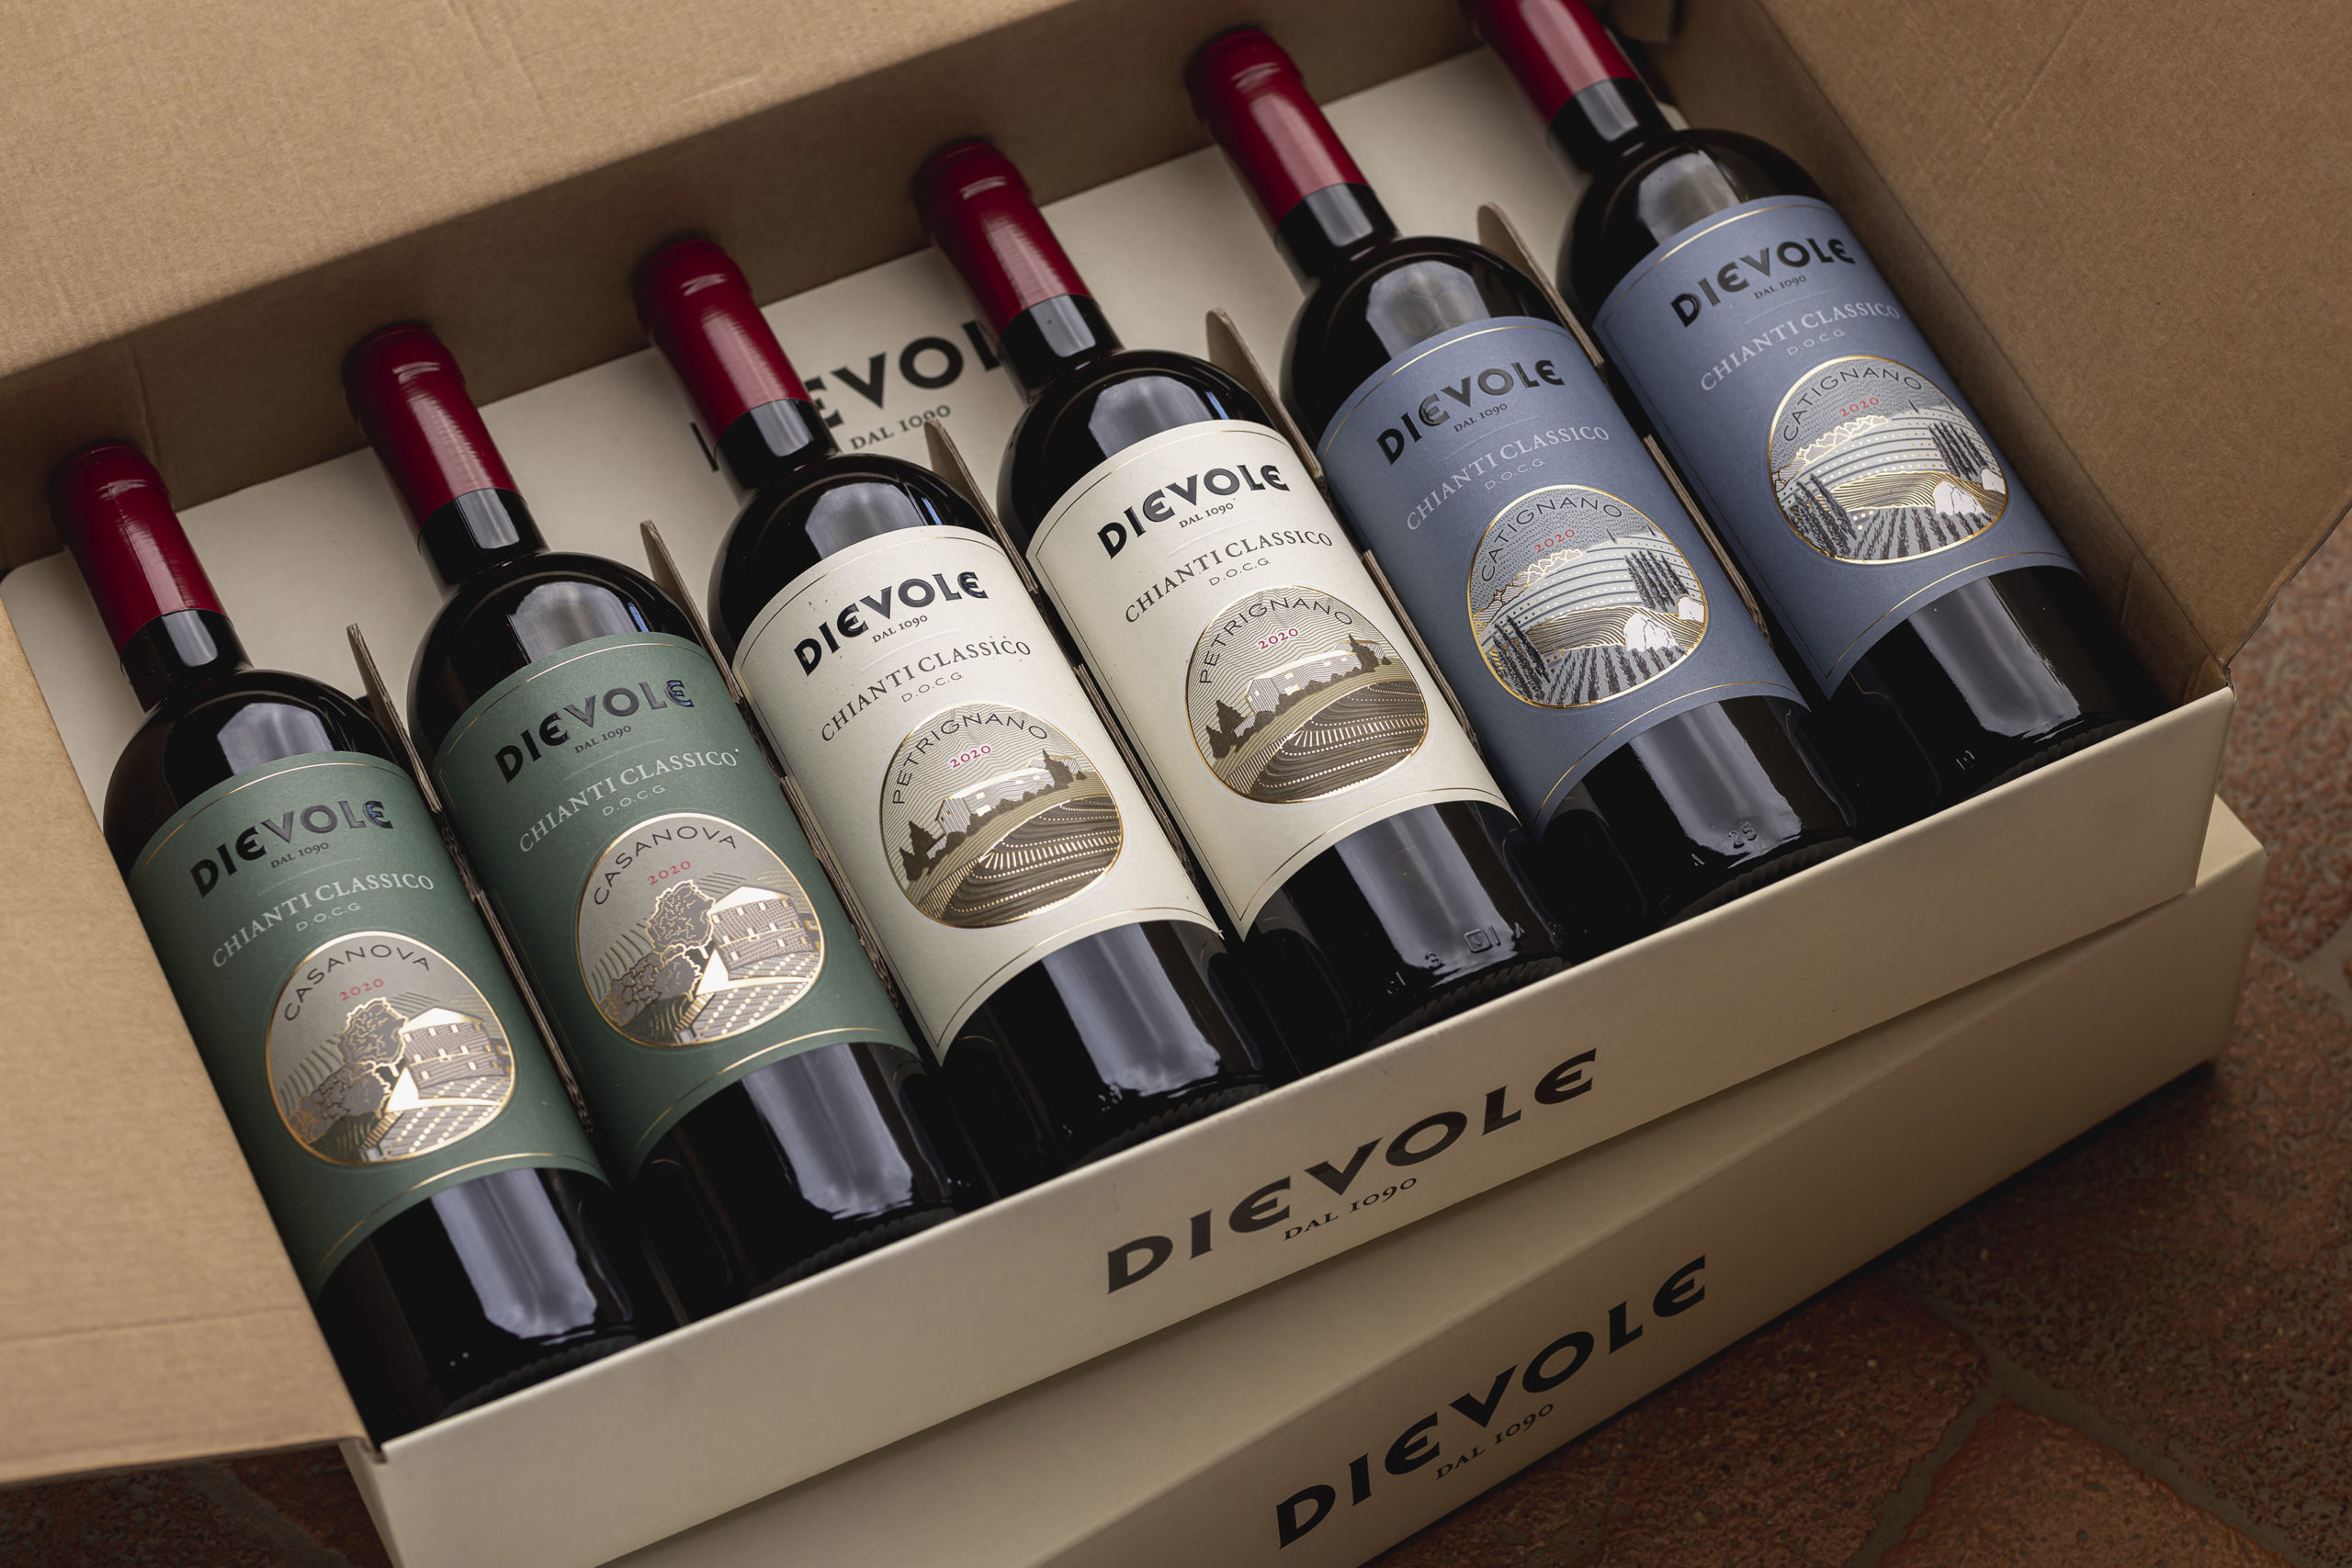 dievole wine tour